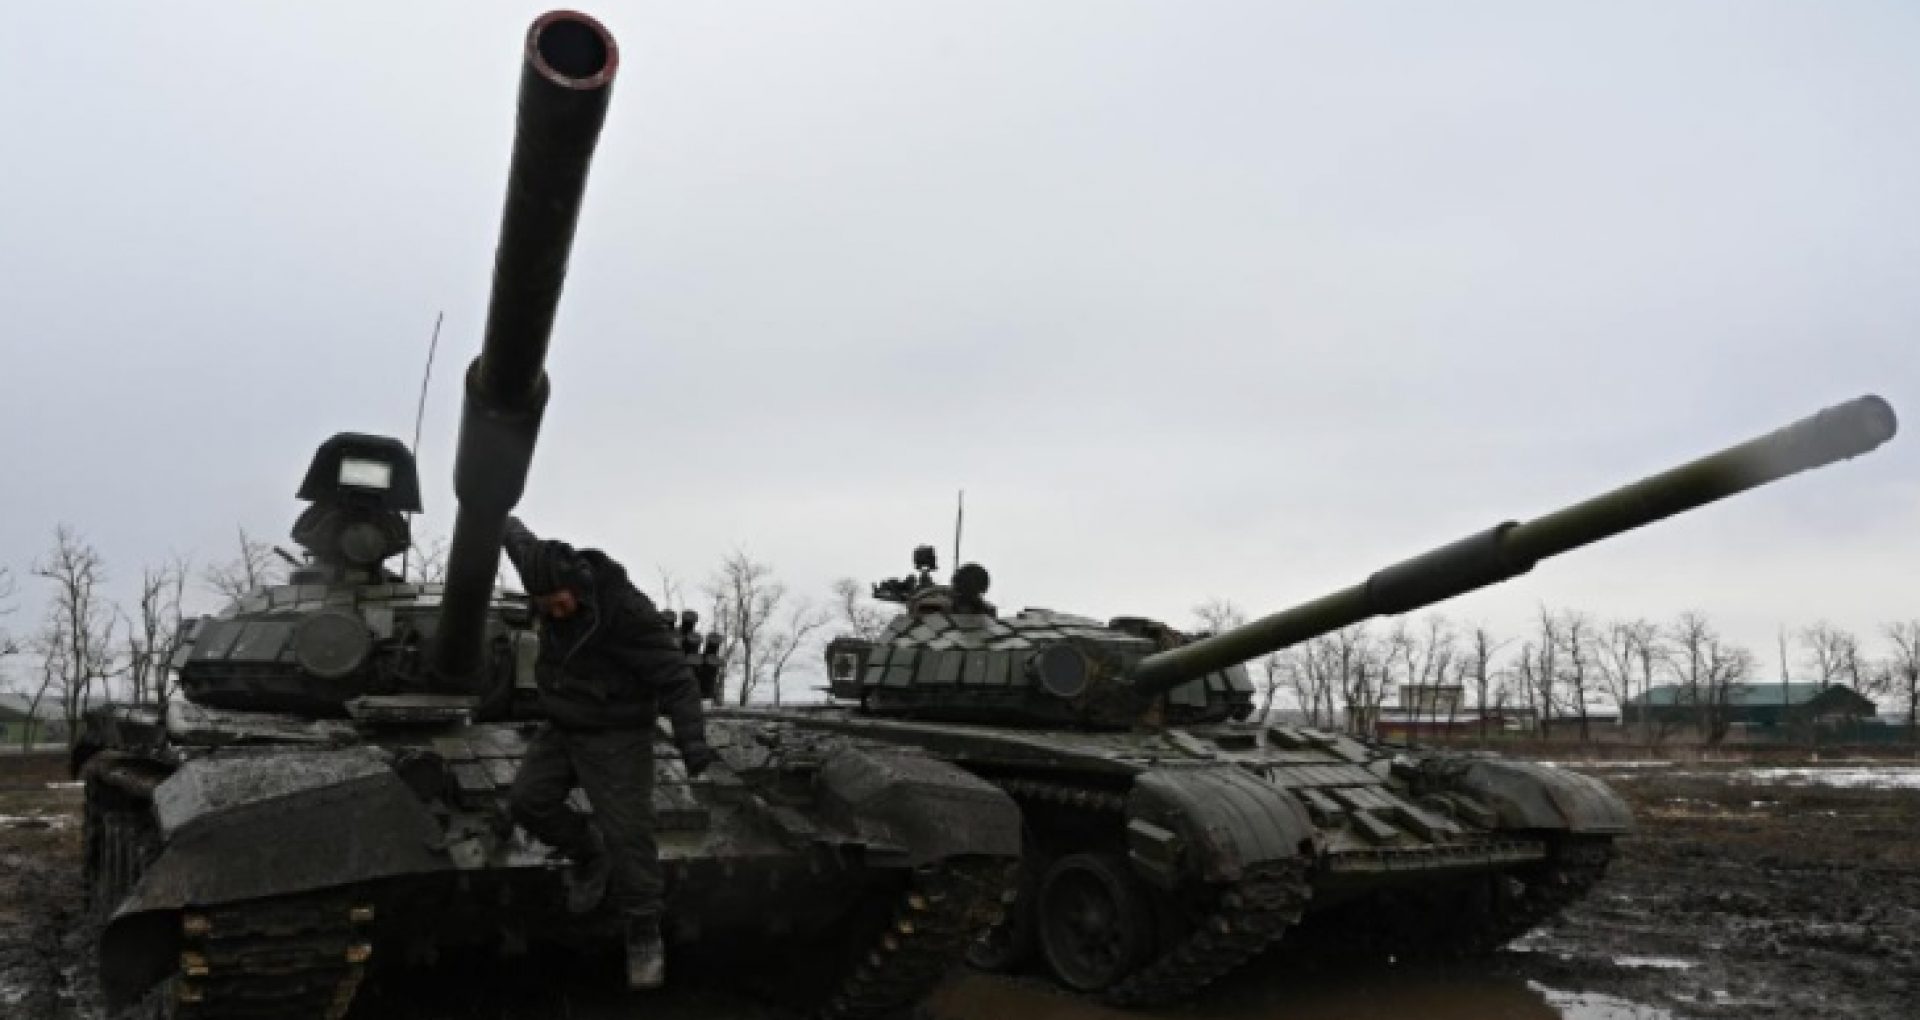 Ministerul ucrainean al Apărării le cere ucrainenilor să nu publice pe rețelele sociale informații despre armele și echipamentele militare pe care Ucraina le primește de la partenerii externi